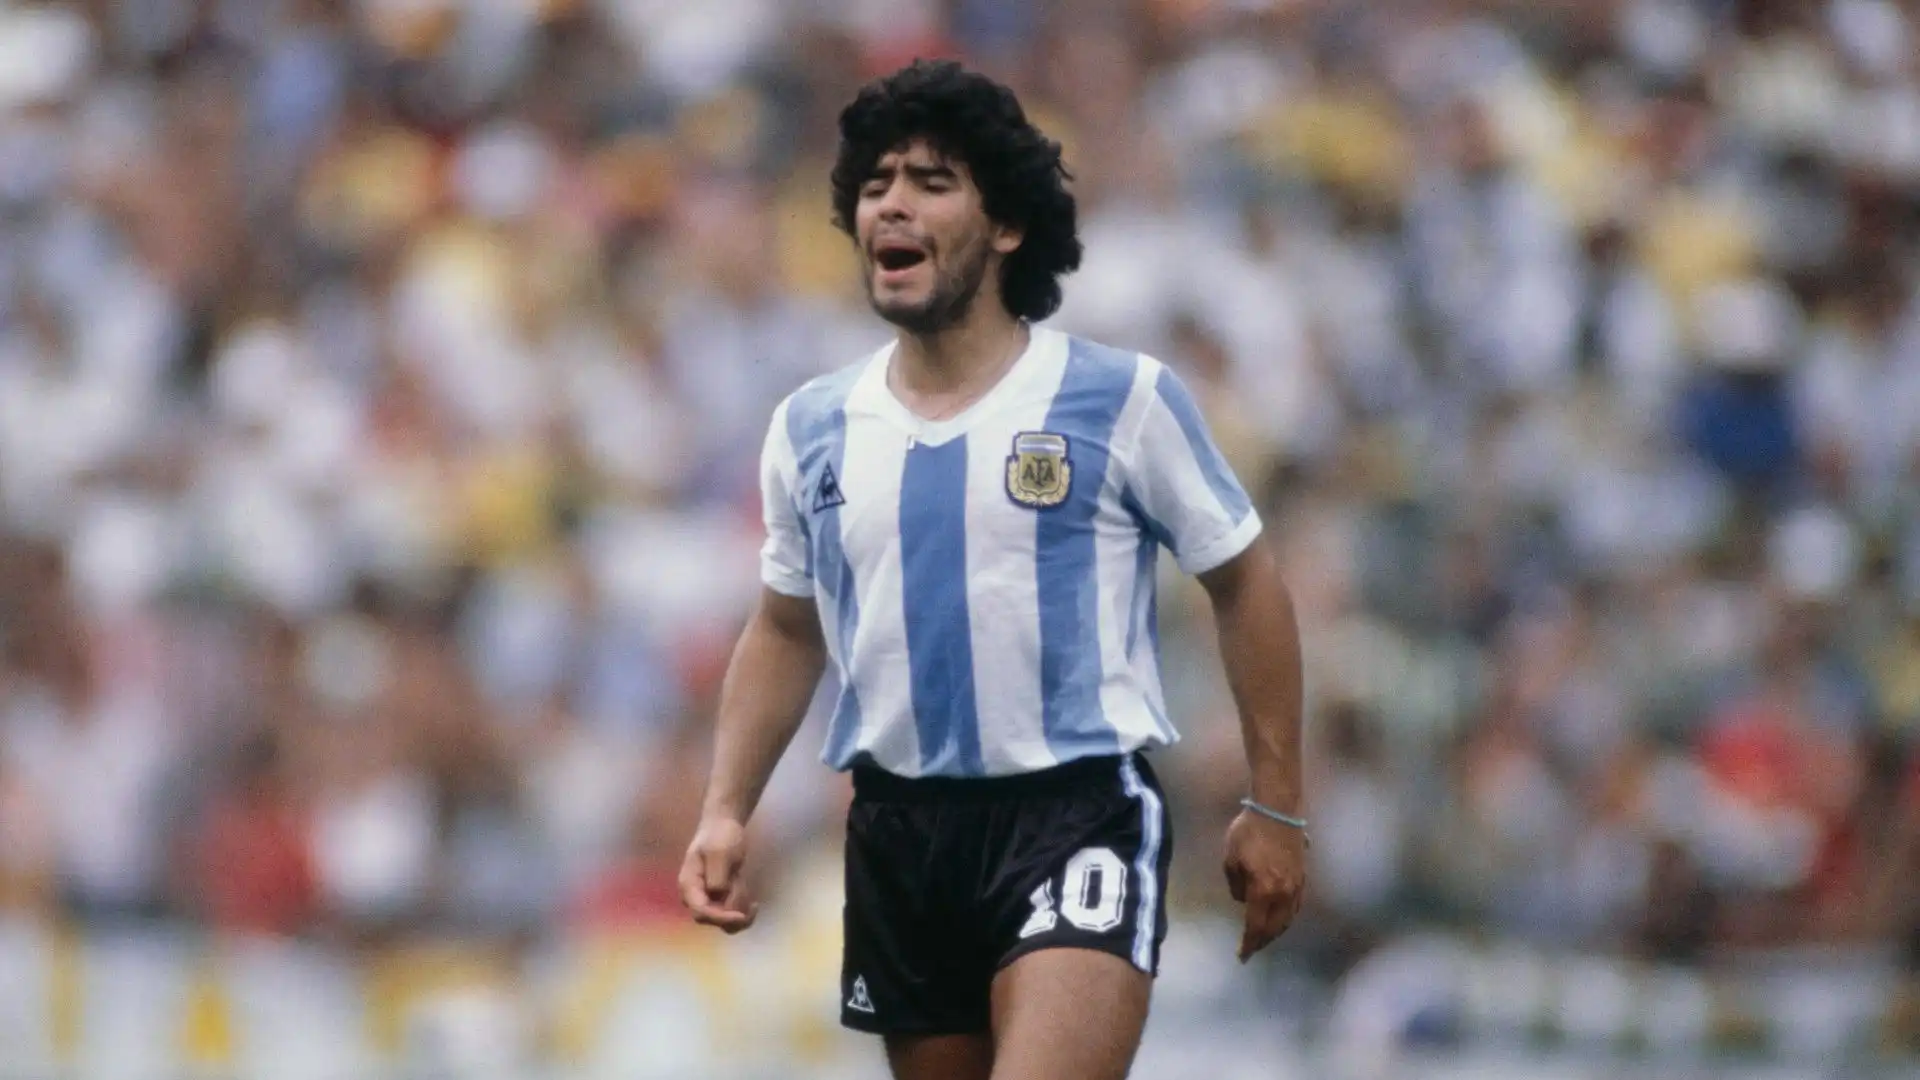 3- Diego Armando Maradona